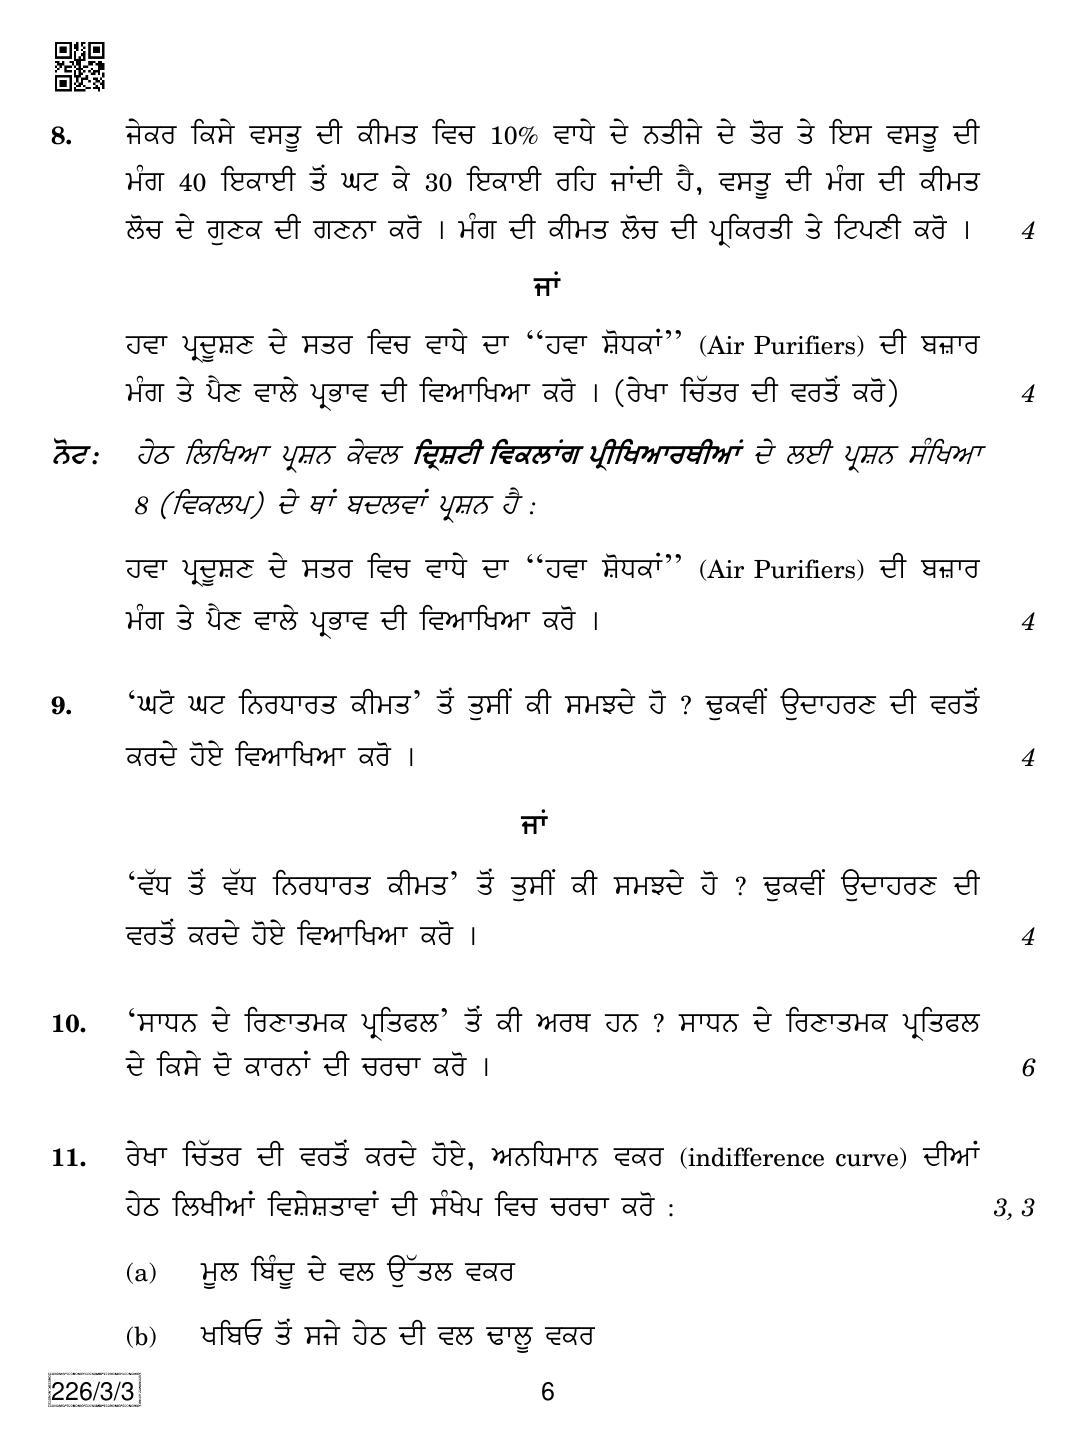 CBSE Class 12 226-3-3 Economics (Punjabi) 2019 Question Paper - Page 6